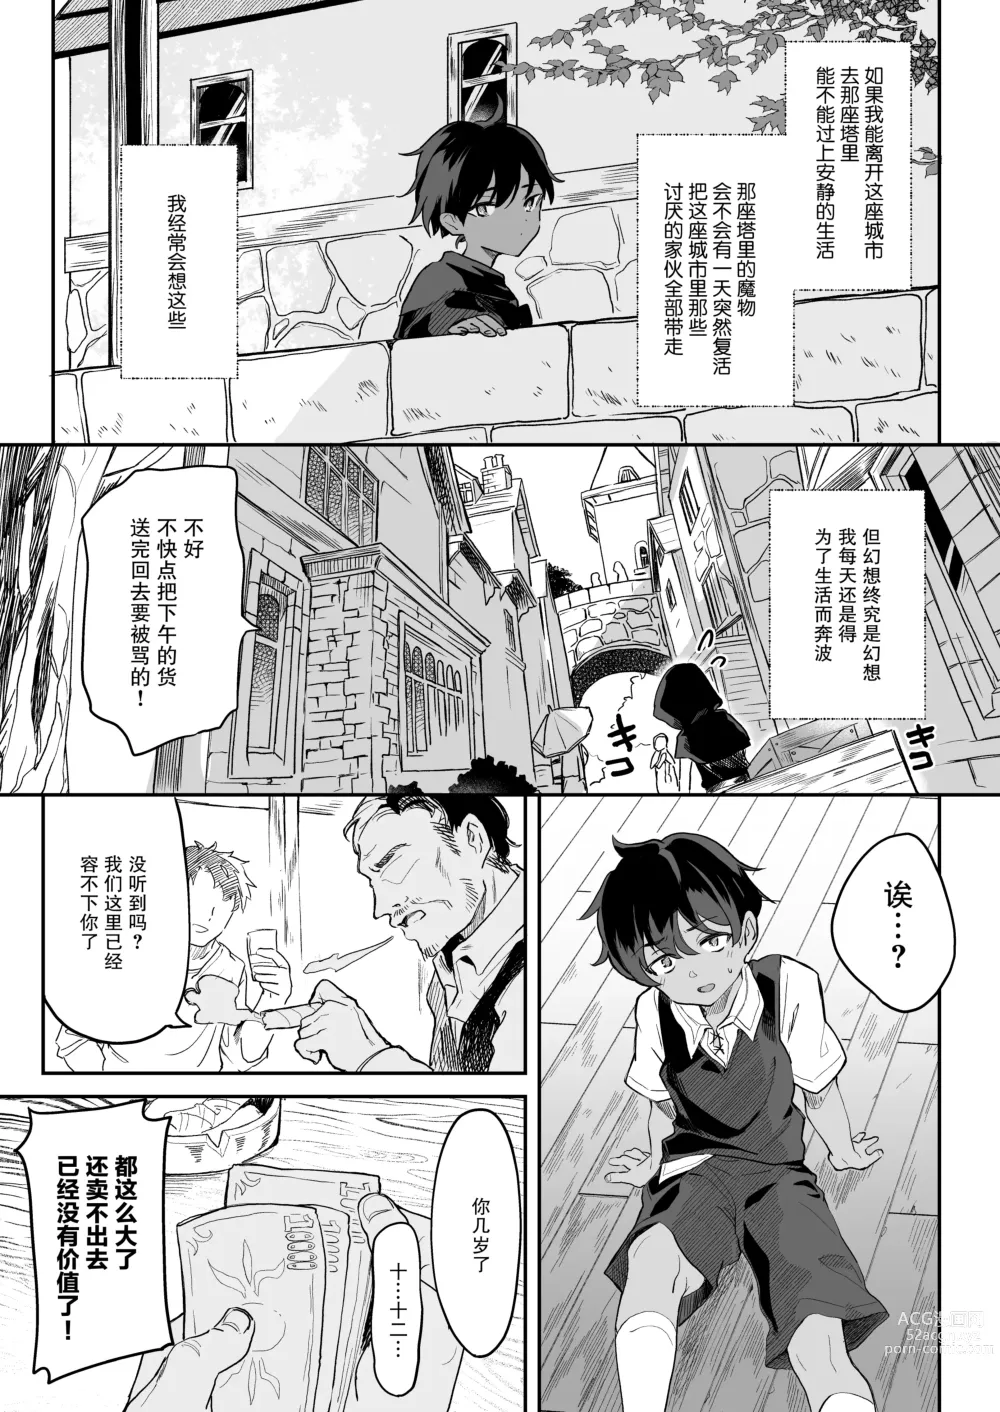 Page 5 of doujinshi 血姬夜交 -真祖公主在发情!- (decensored)